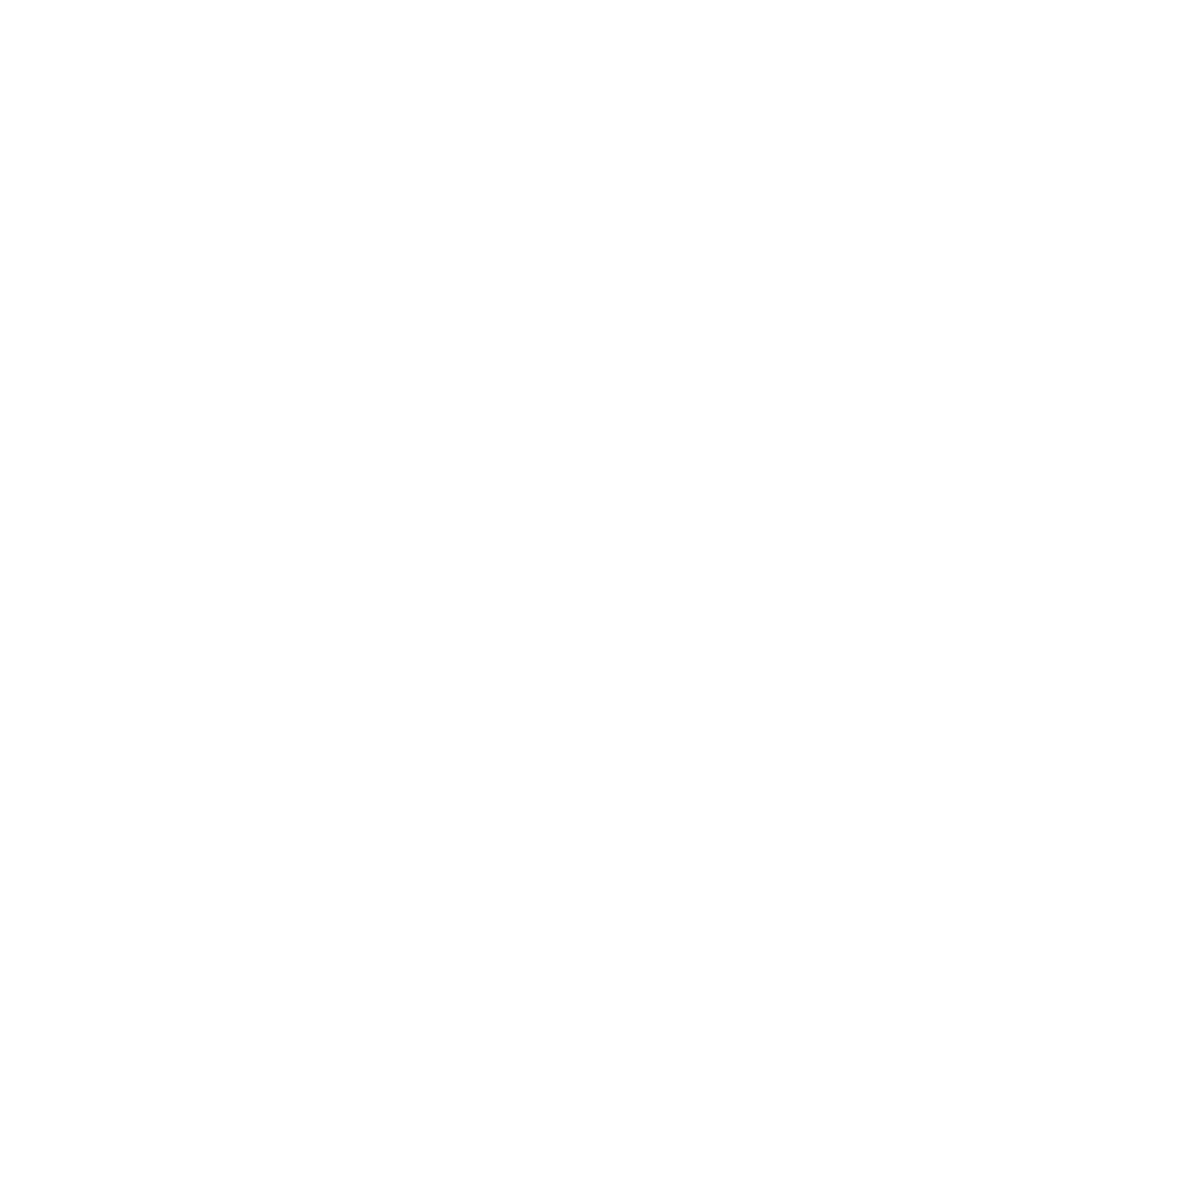 Logos_Master-Builders.png